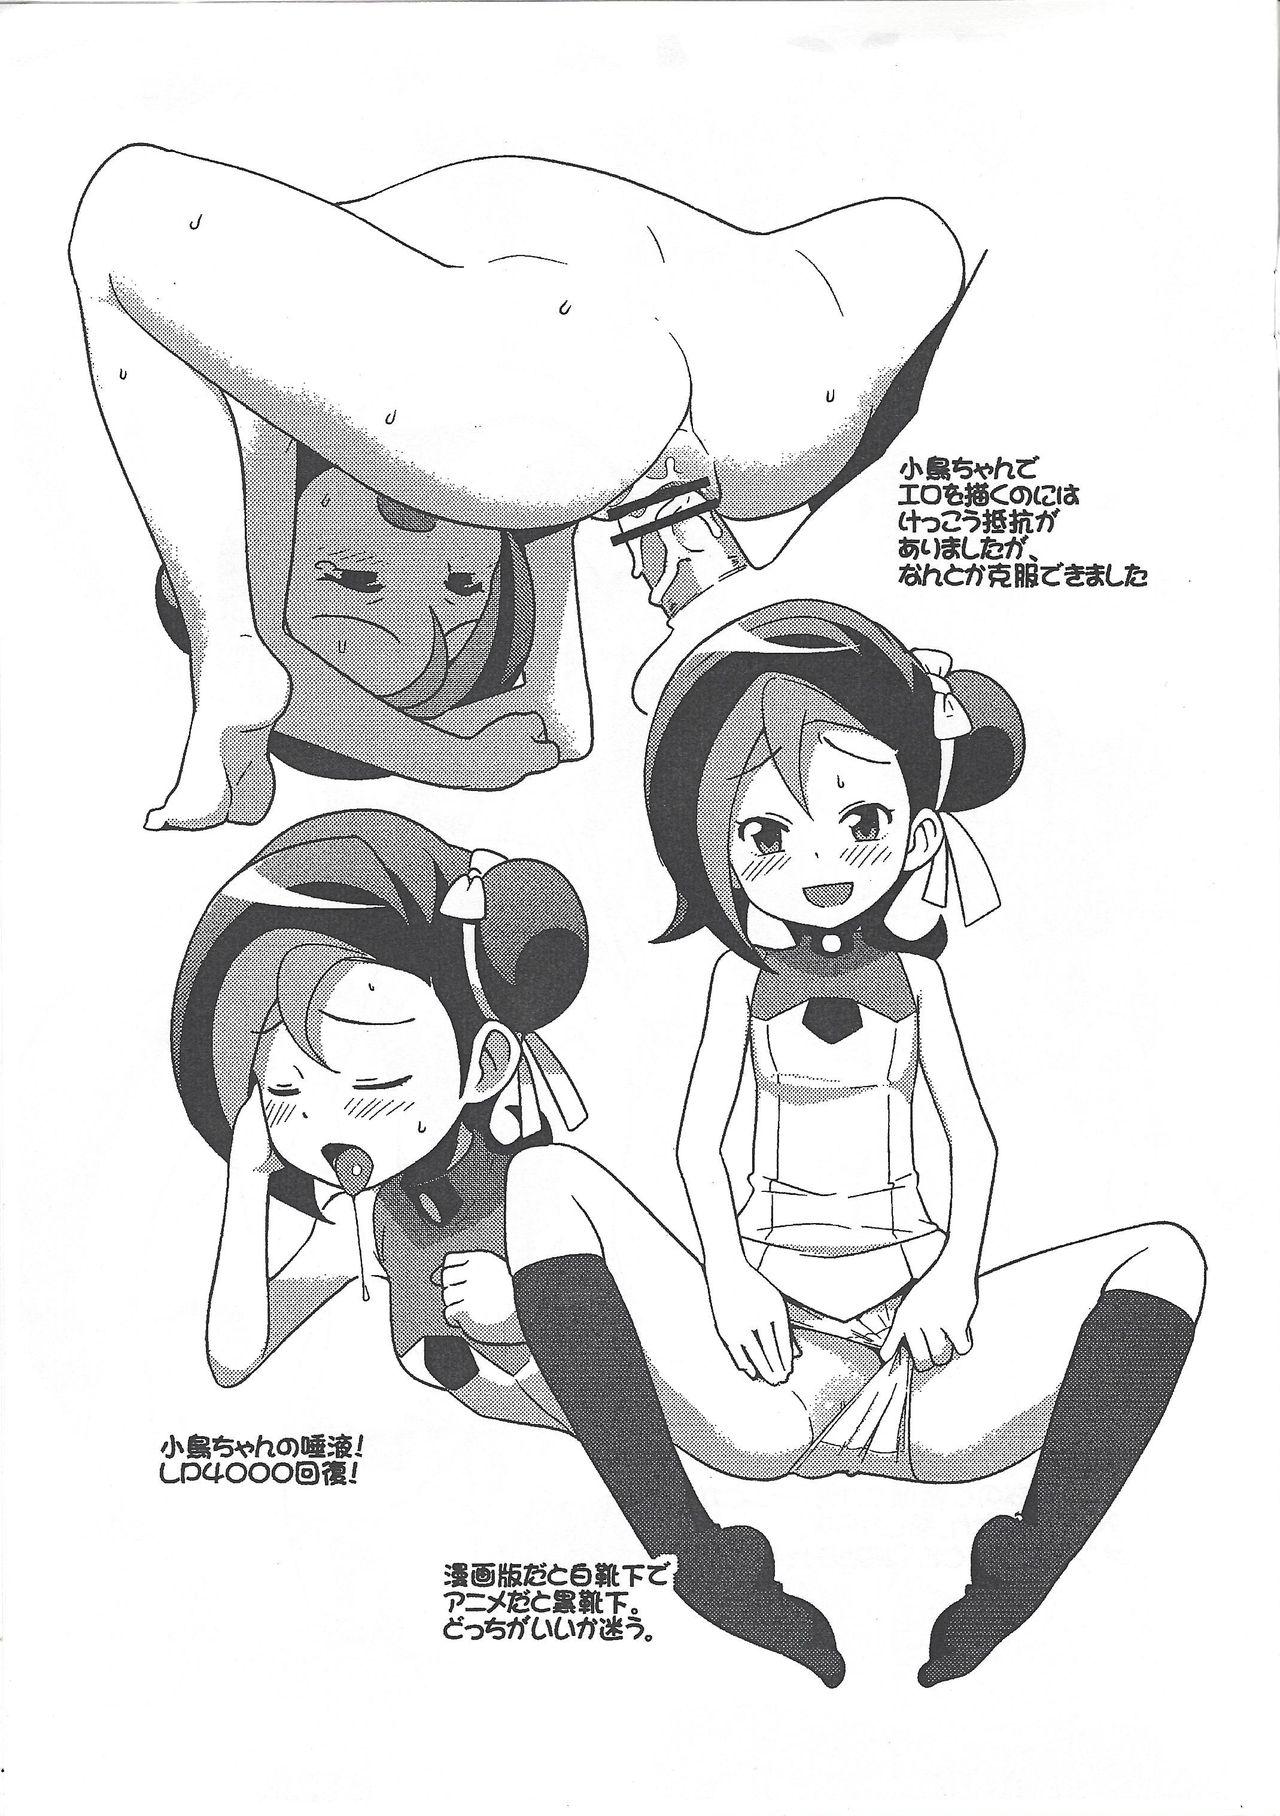 Storyline (Puniket 23) [Funi Funi Lab (Tamagoro)] Yu-Gi-Oh ZEXAL Kotori-chan Book (Tentative) (Yu-Gi-Oh! ZEXAL) - Yu gi oh zexal Newbie - Page 3